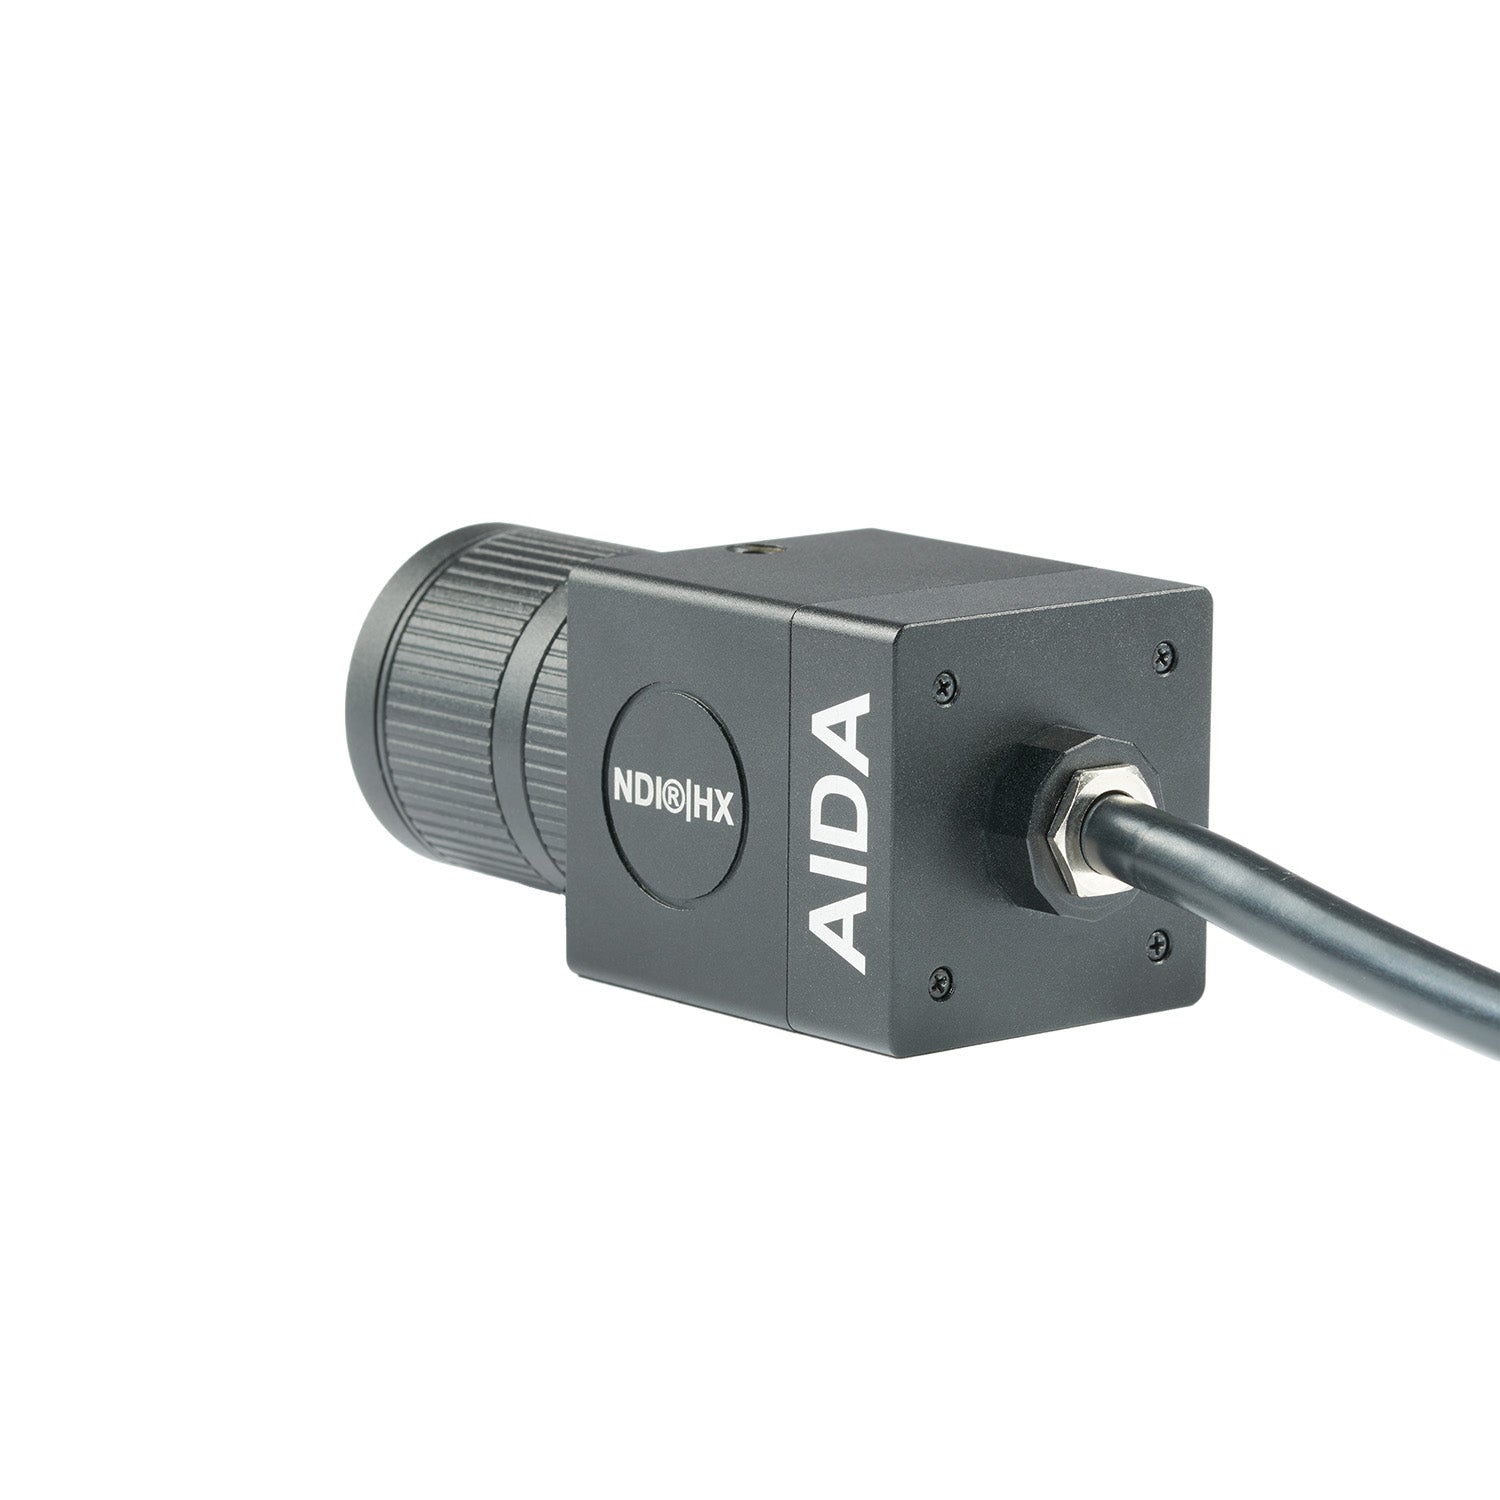 AIDA Imaging HD-NDI-VF - HD NDI|HX POV Camera, Vari-focal Lens, rear angle